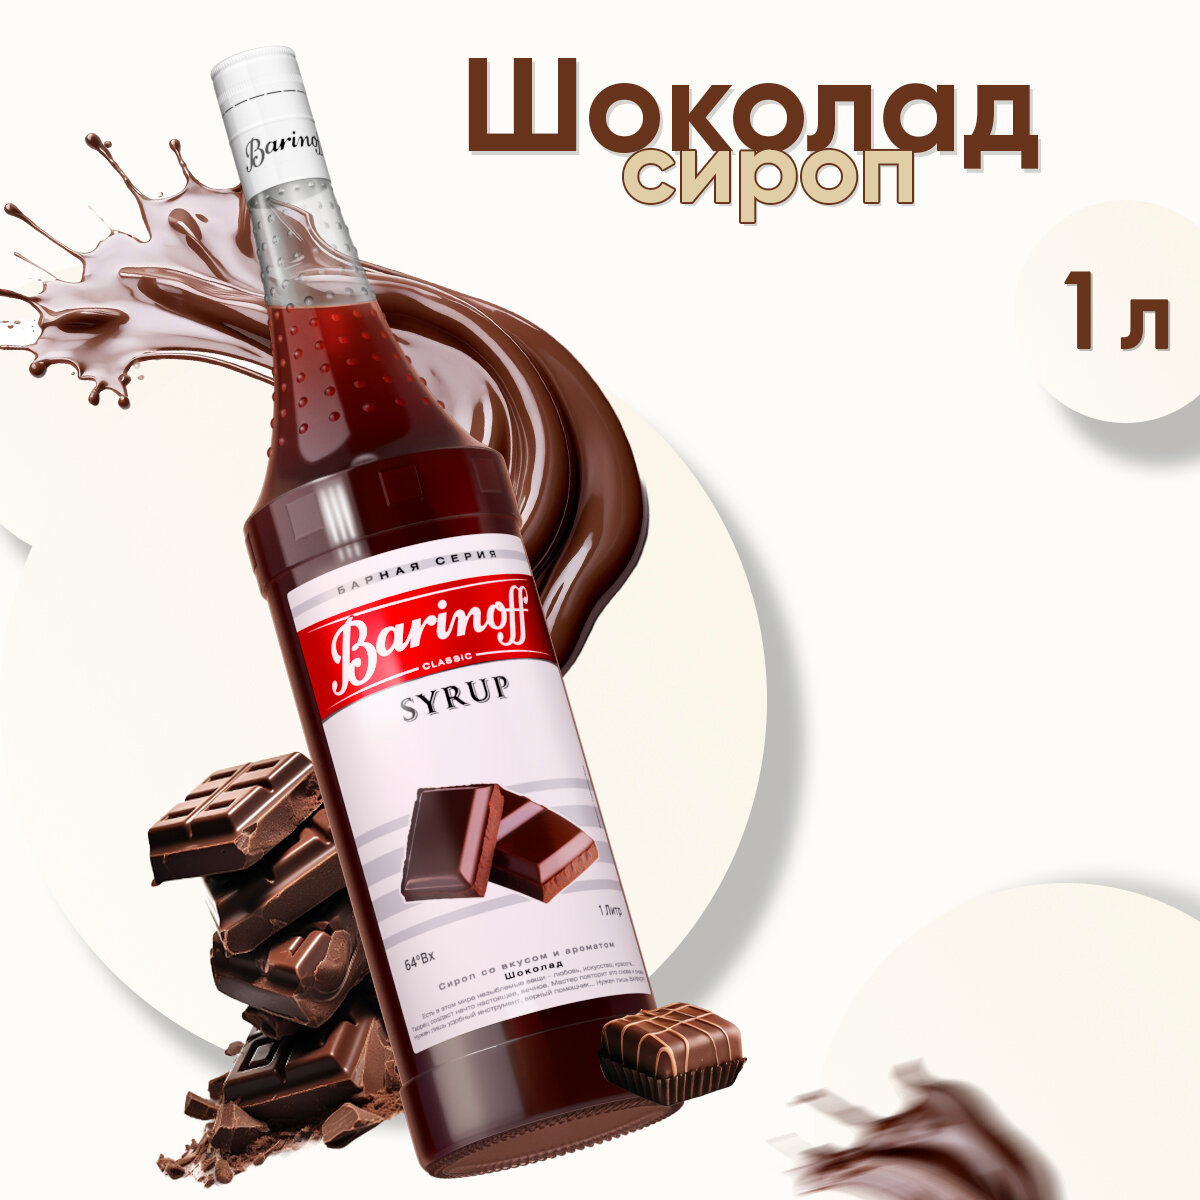 Сироп Barinoff Шоколад (для кофе, коктейлей, десертов, лимонада и мороженого), 1л